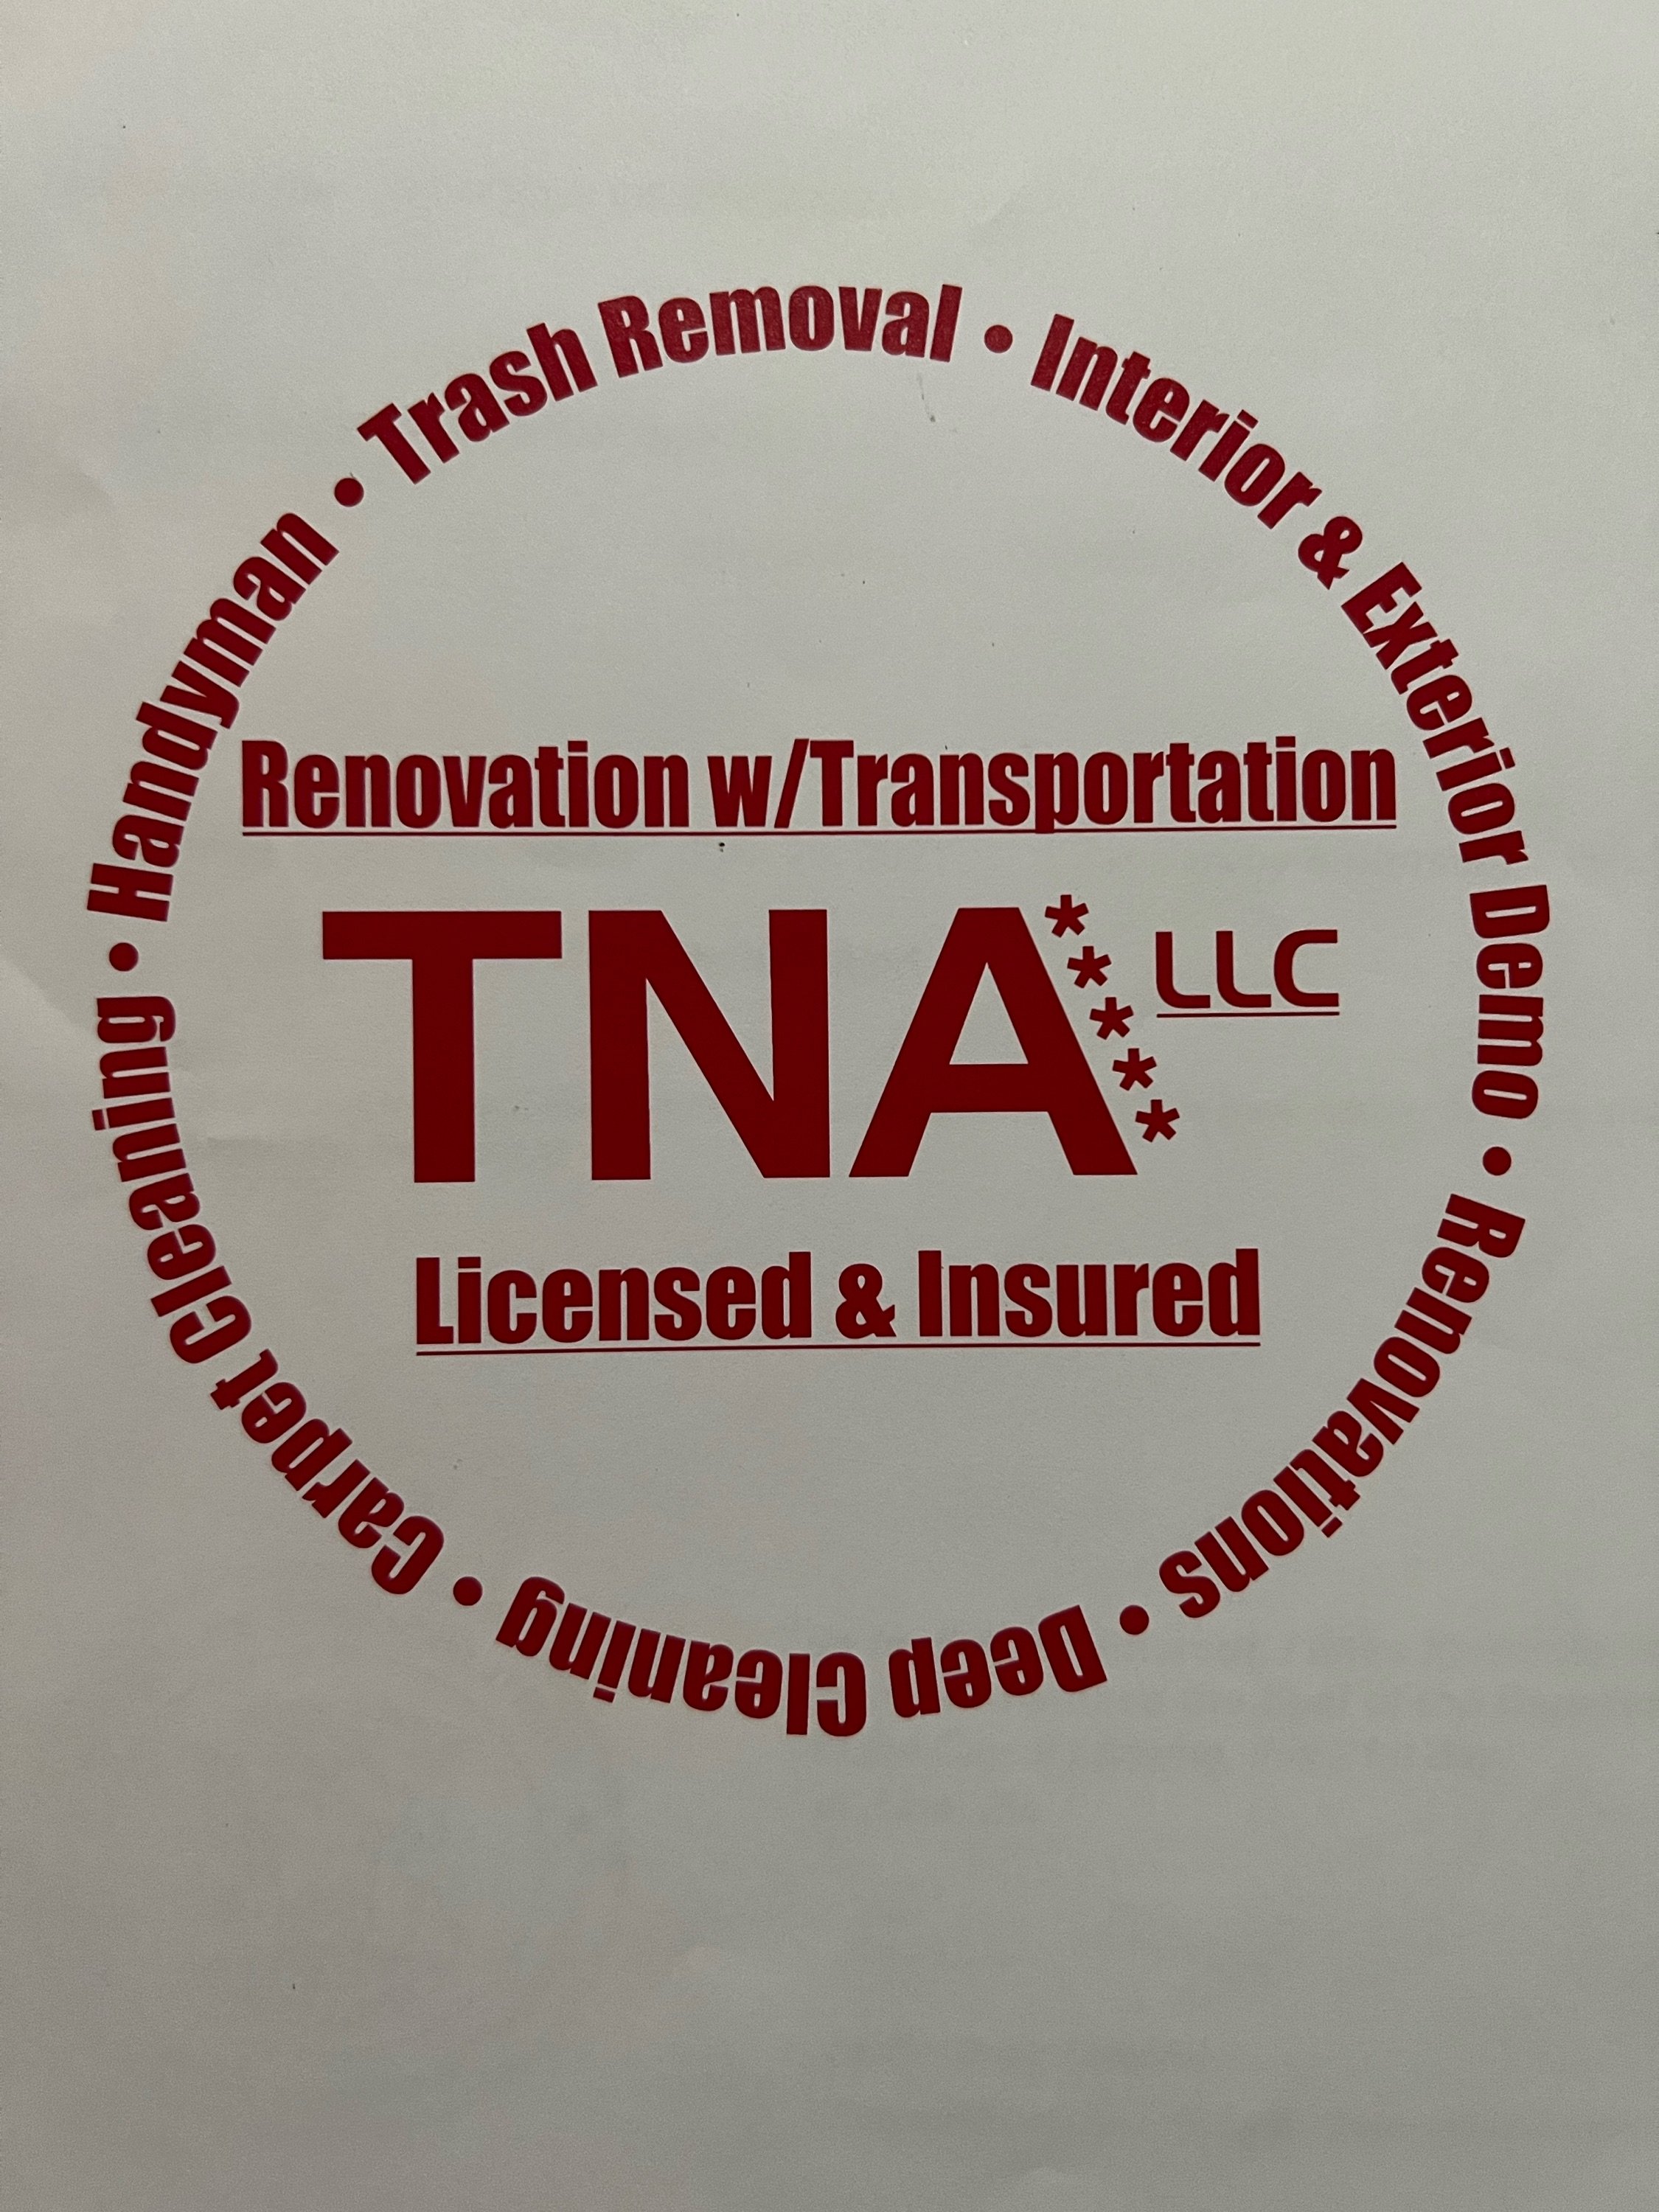 TNA Renovations Logo